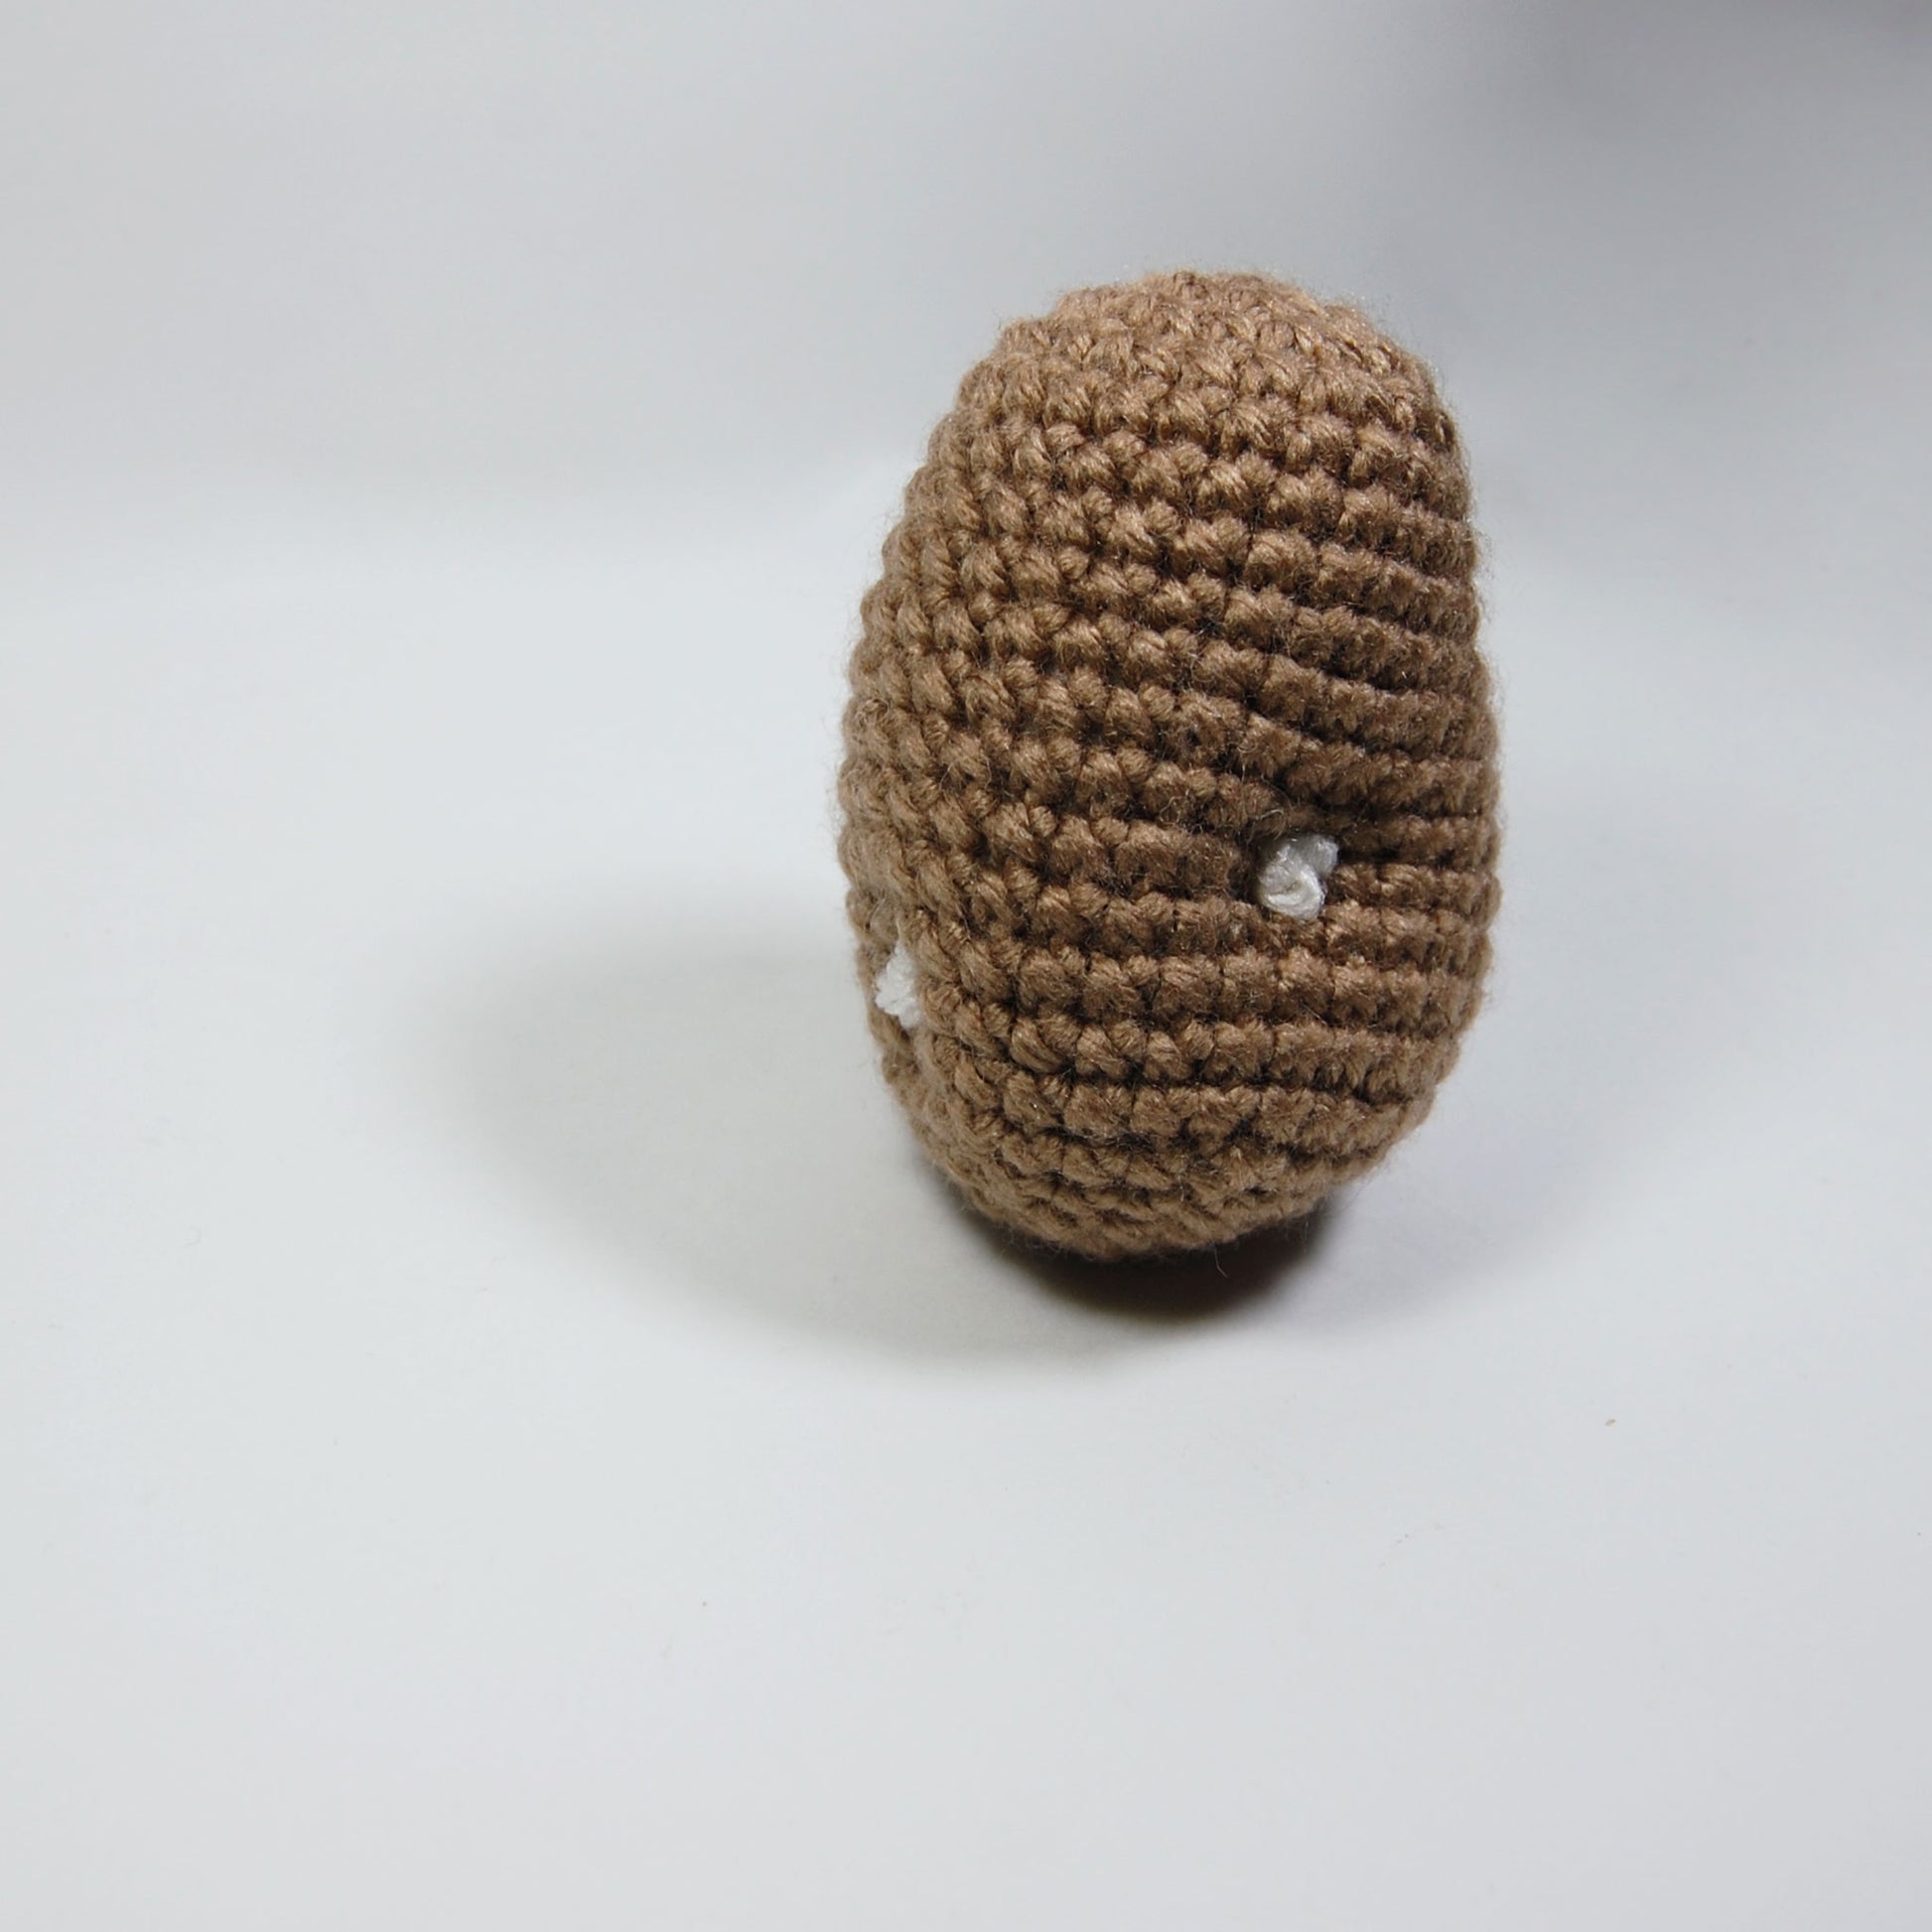 How to crochet a Potato 